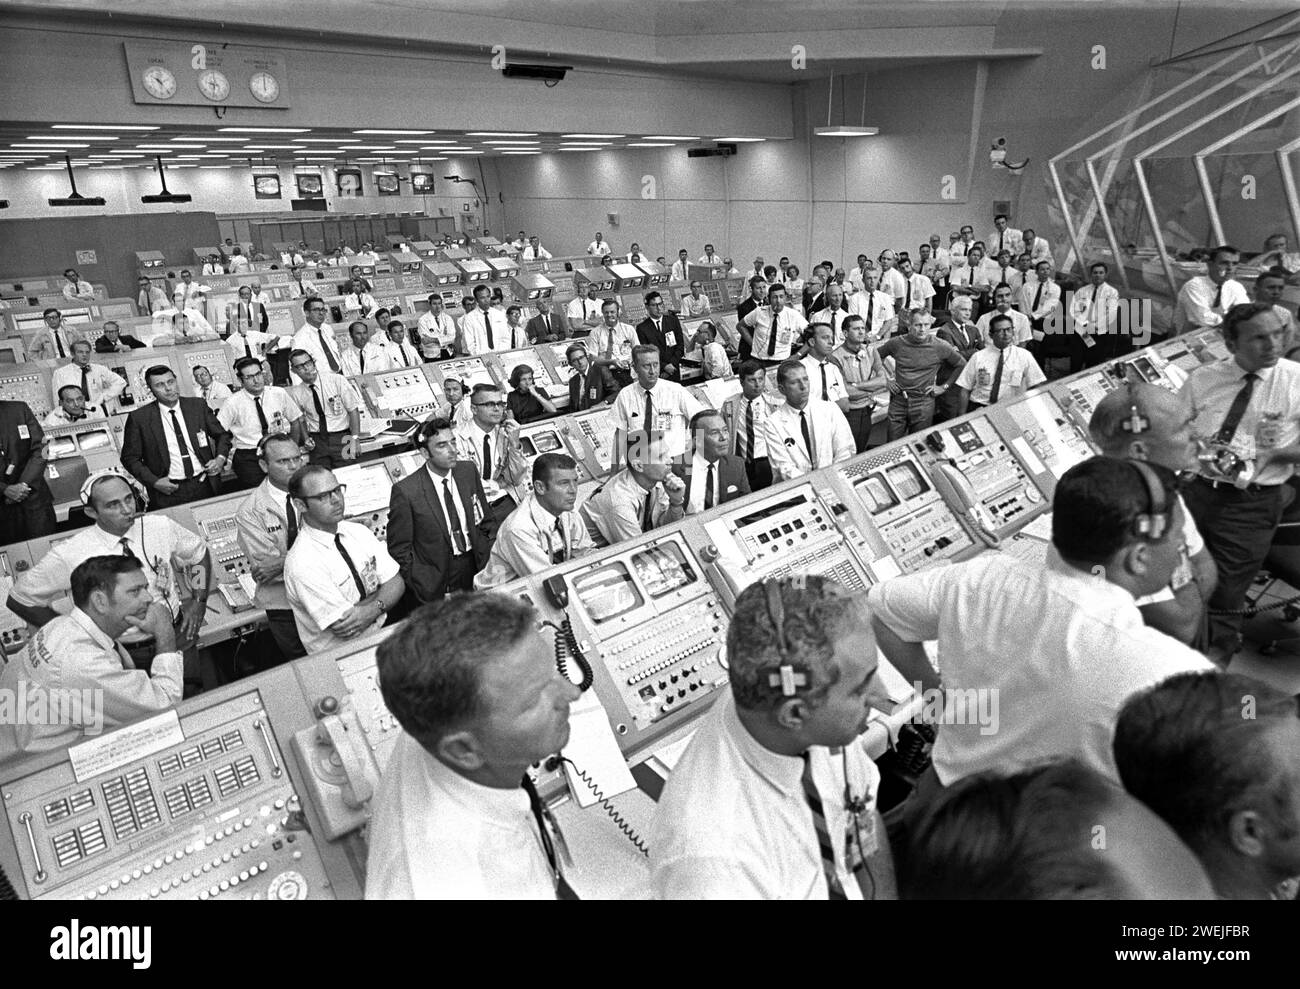 Les membres de l'équipe gouvernement-industrie se lèvent de leurs consoles au Launch Control Center pour écouter les remarques du vice-président américain Spiro Agnew après le décollage d'Apollo 11, Kennedy Space Center, Merritt Island, Floride, États-Unis, NASA, 16 juillet 1969 Banque D'Images